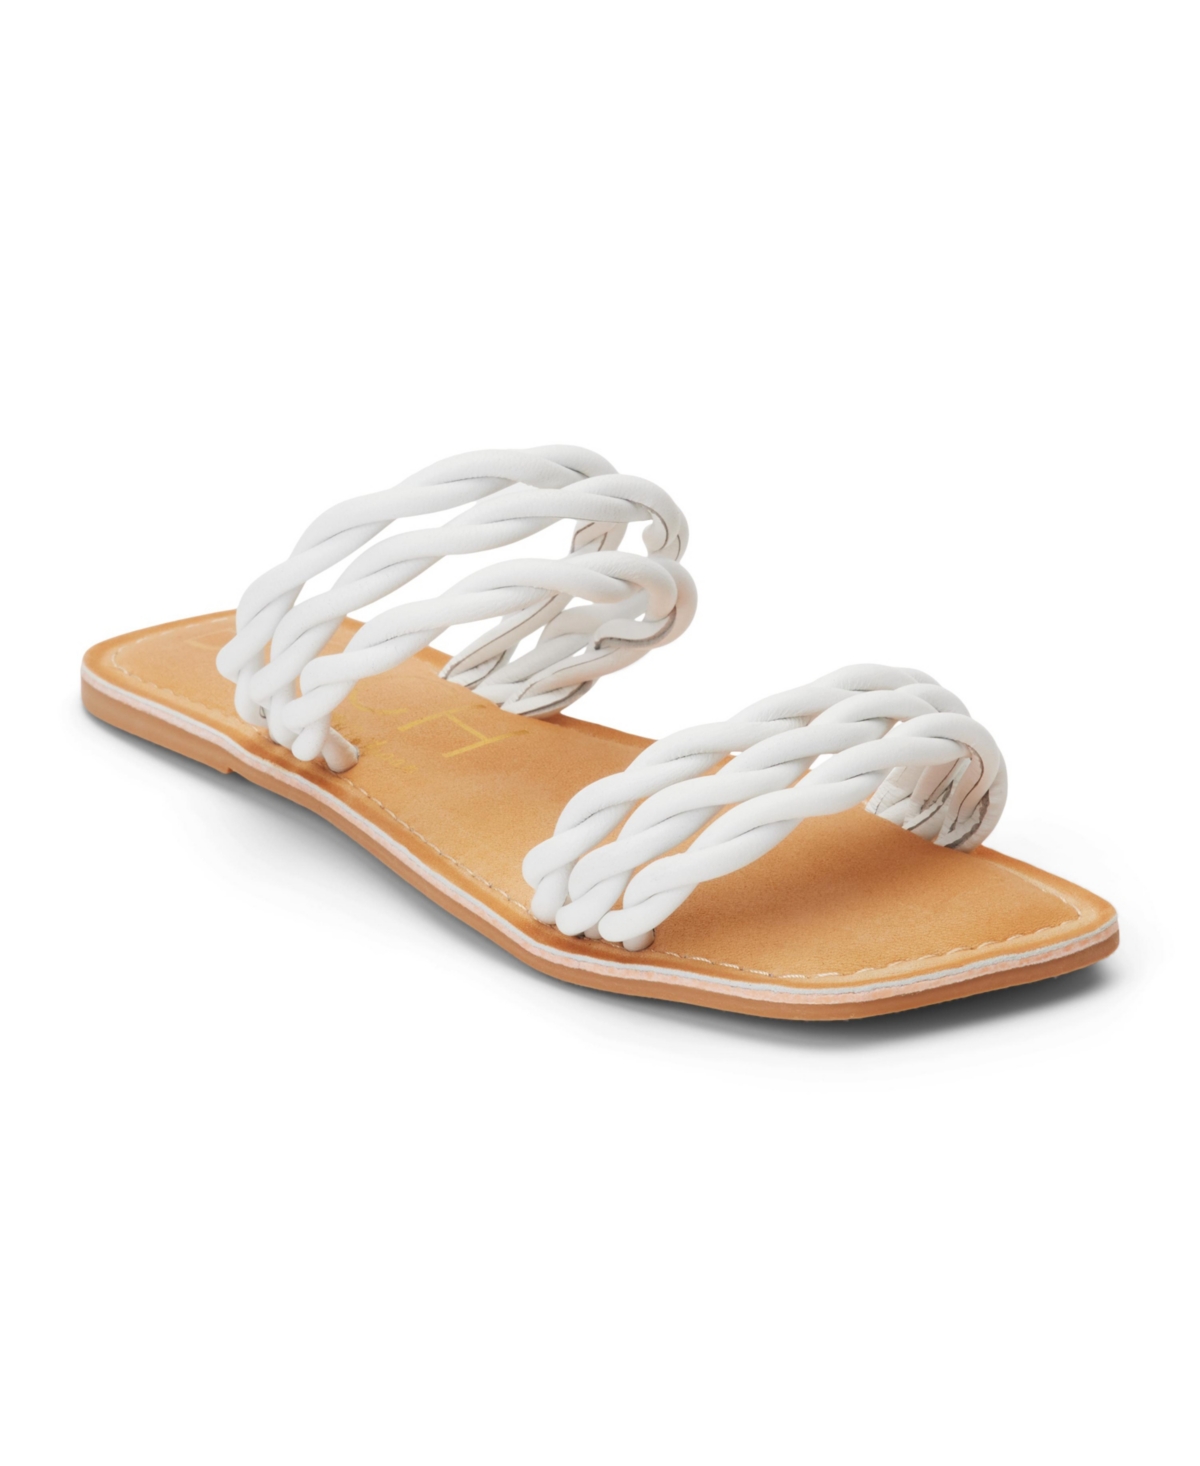 Amalia Women's Sandals - White